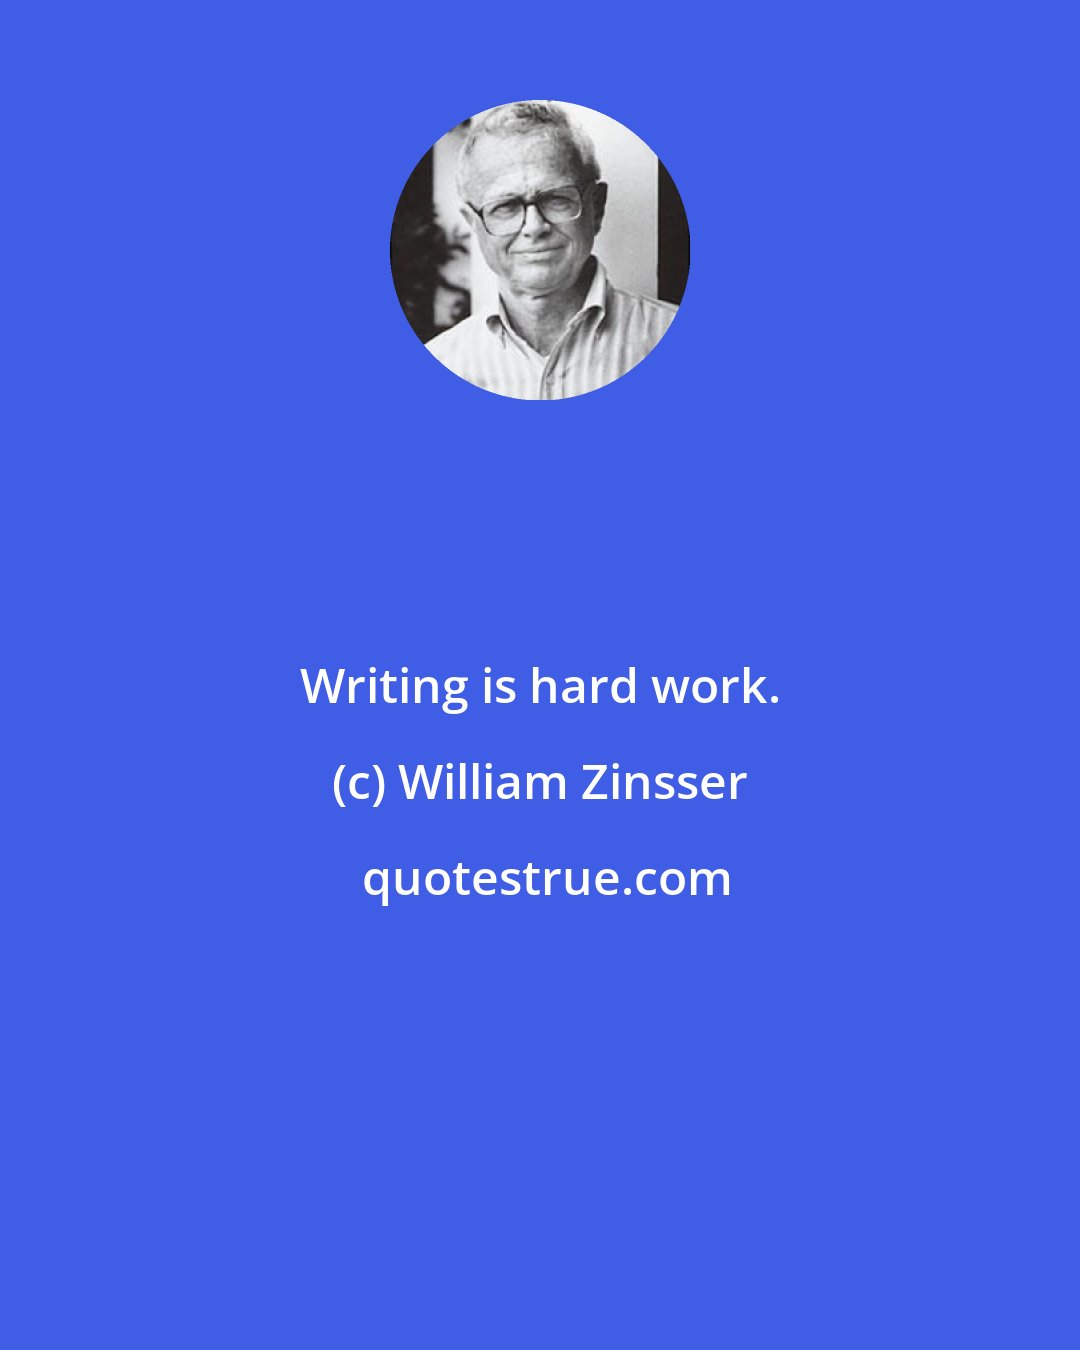 William Zinsser: Writing is hard work.